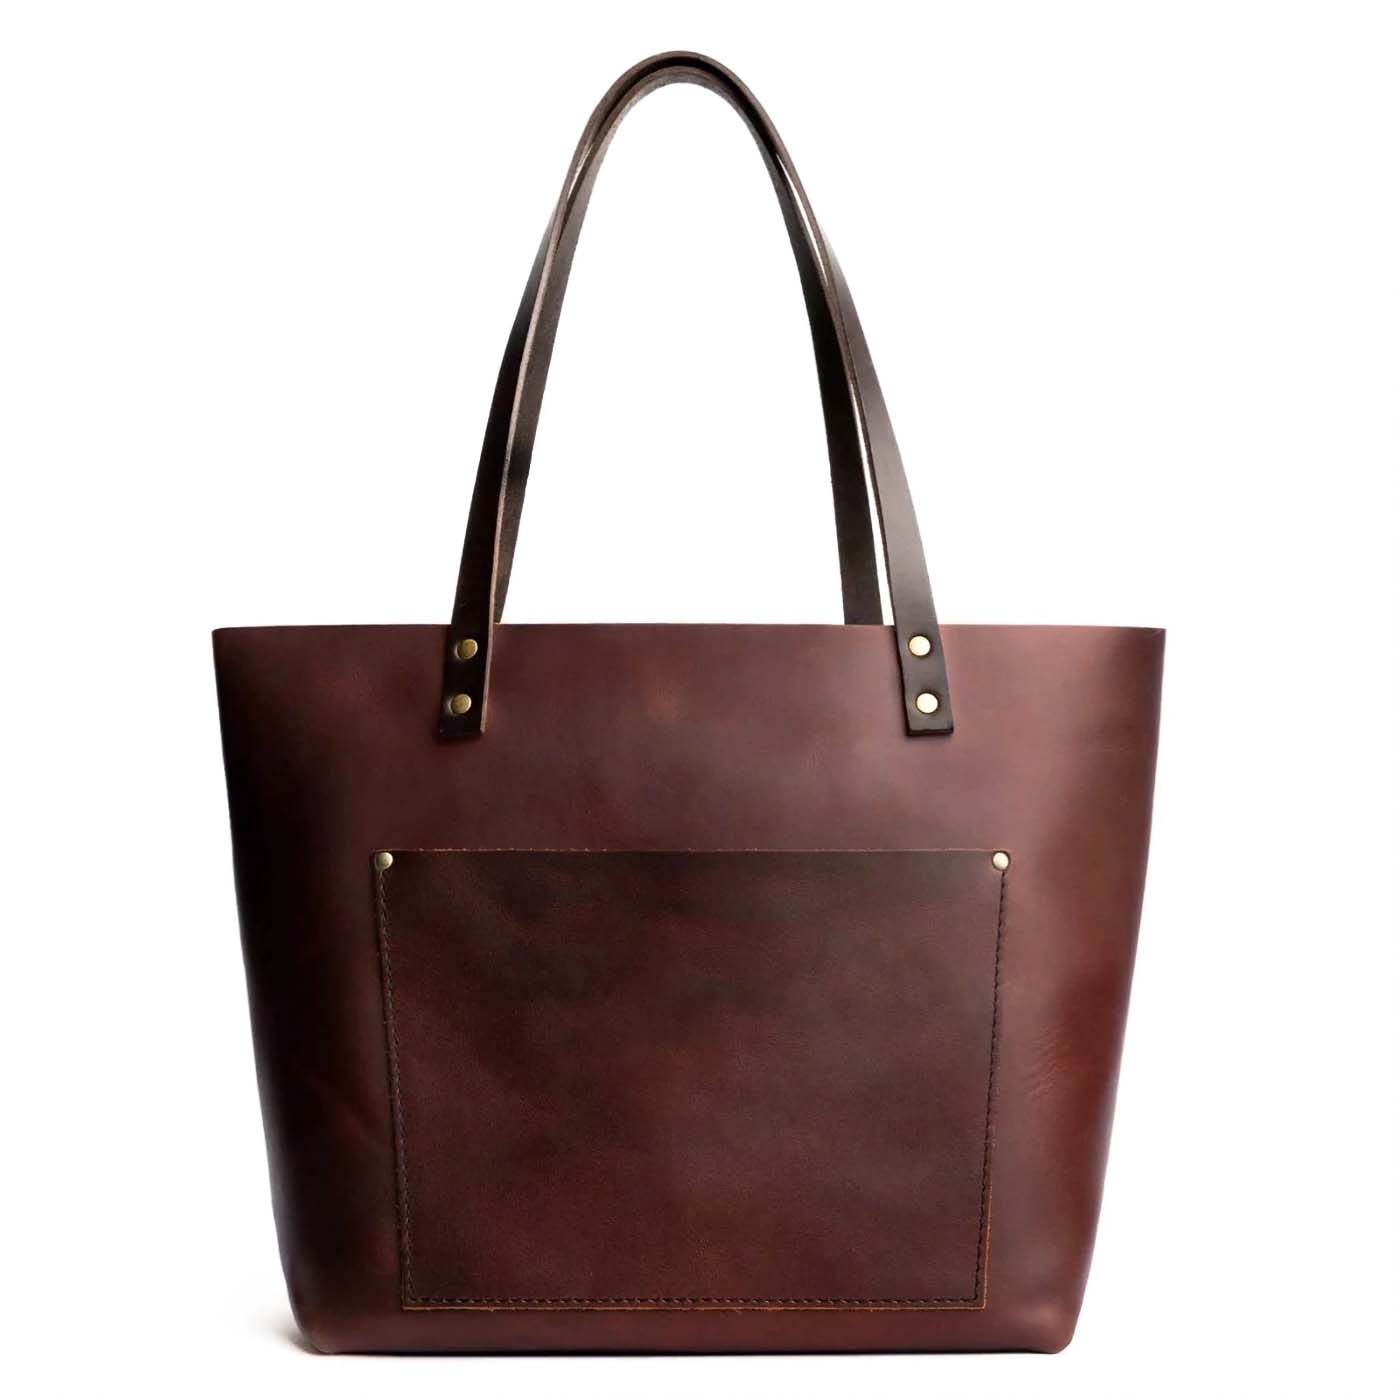 Fashion Bags Online - Stylish Bags Online for Men & Women | Nestasia